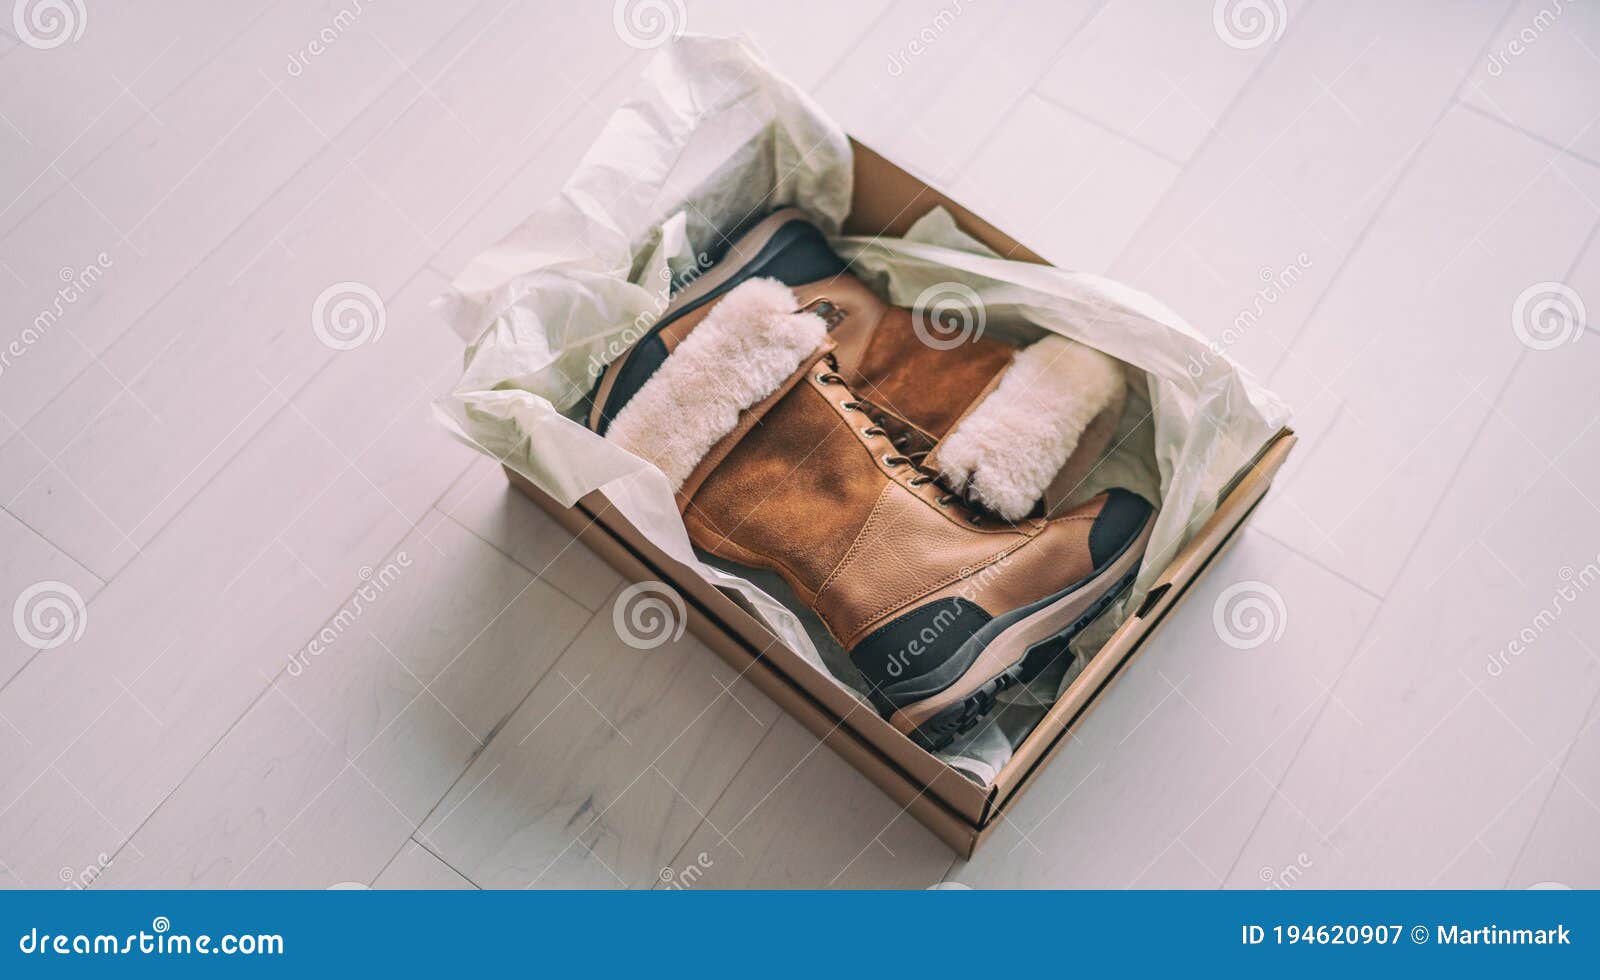 Tienda De Zapatos Comprar Botas De Invierno. Vista Superior De Zapatos De Senderismo En Nueva Caja. Comprar Zapatos En Línea Imagen de archivo Imagen de casero: 194620907